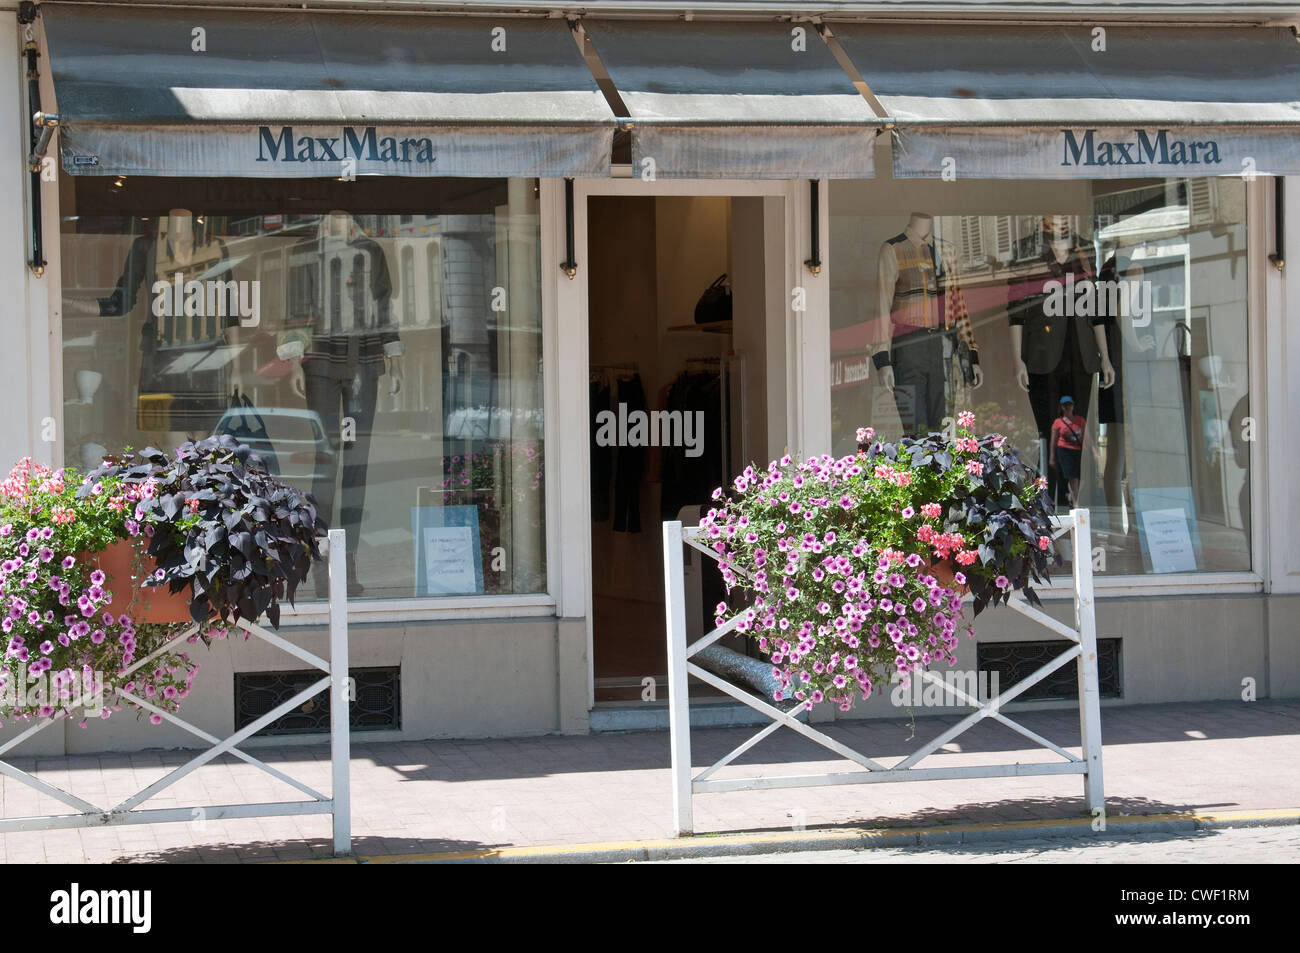 MaxMara fashion store à Pau sud ouest France Banque D'Images